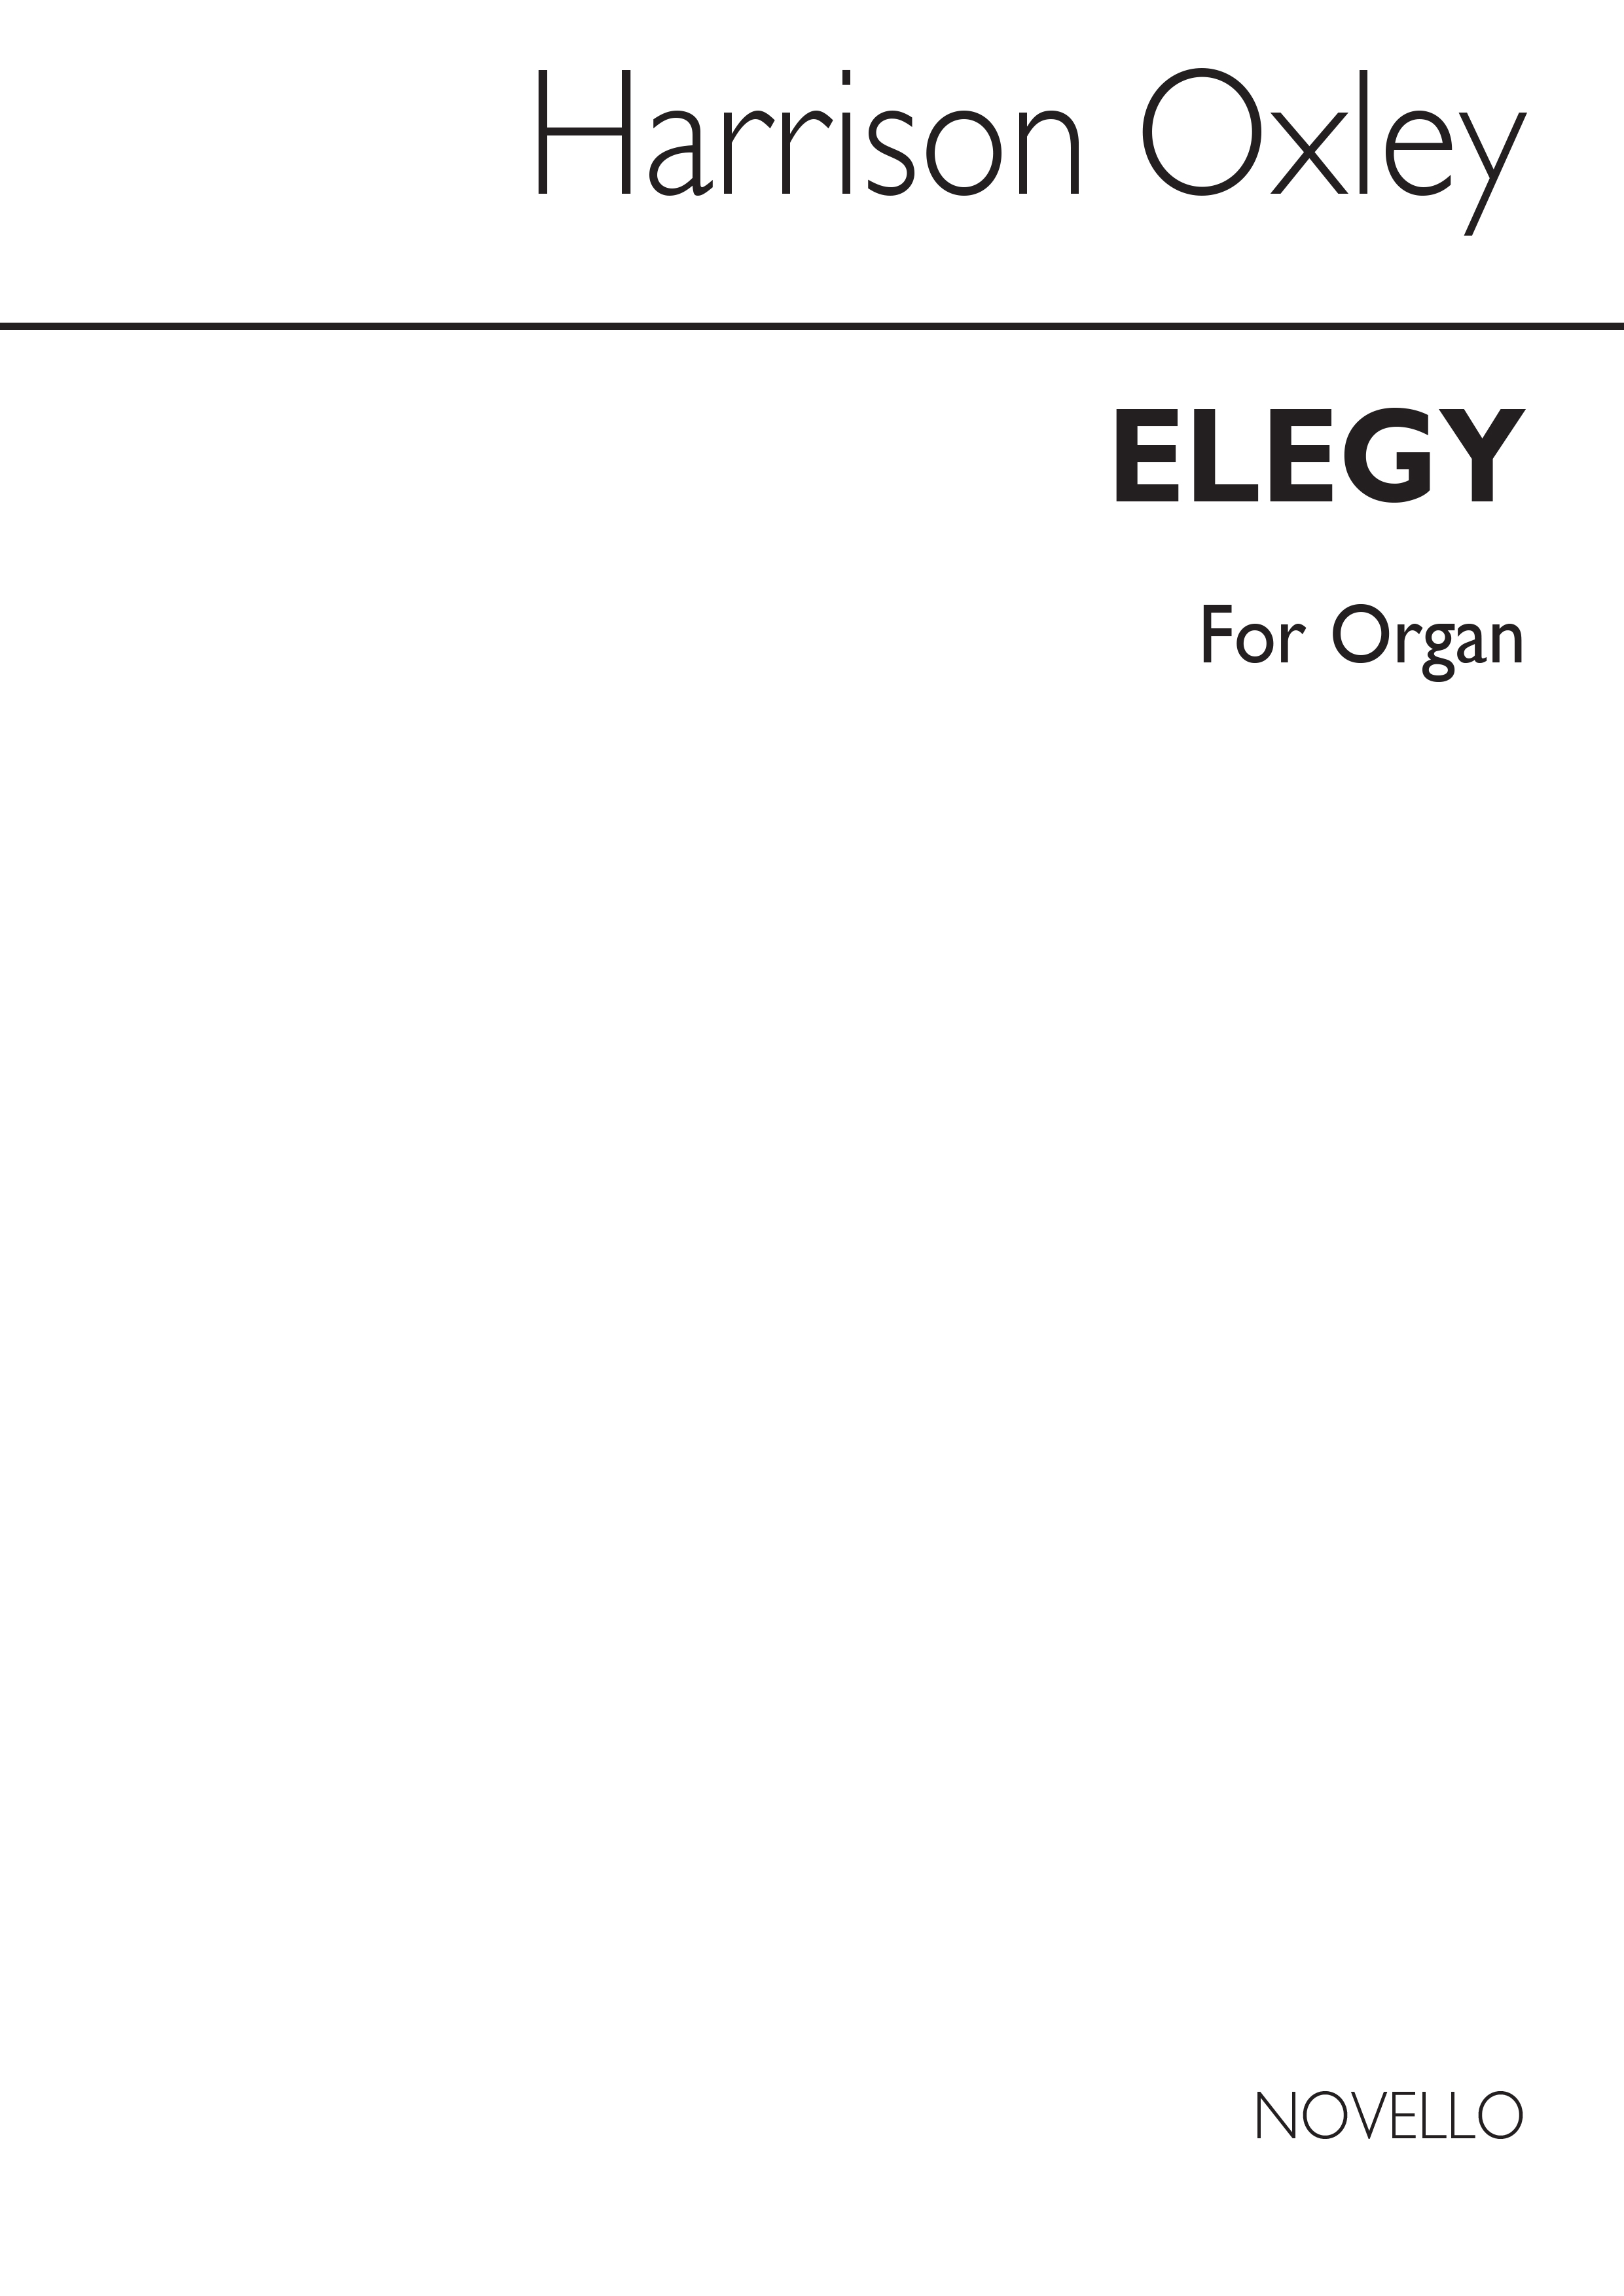 Harrison Oxley: Elegy For Organ